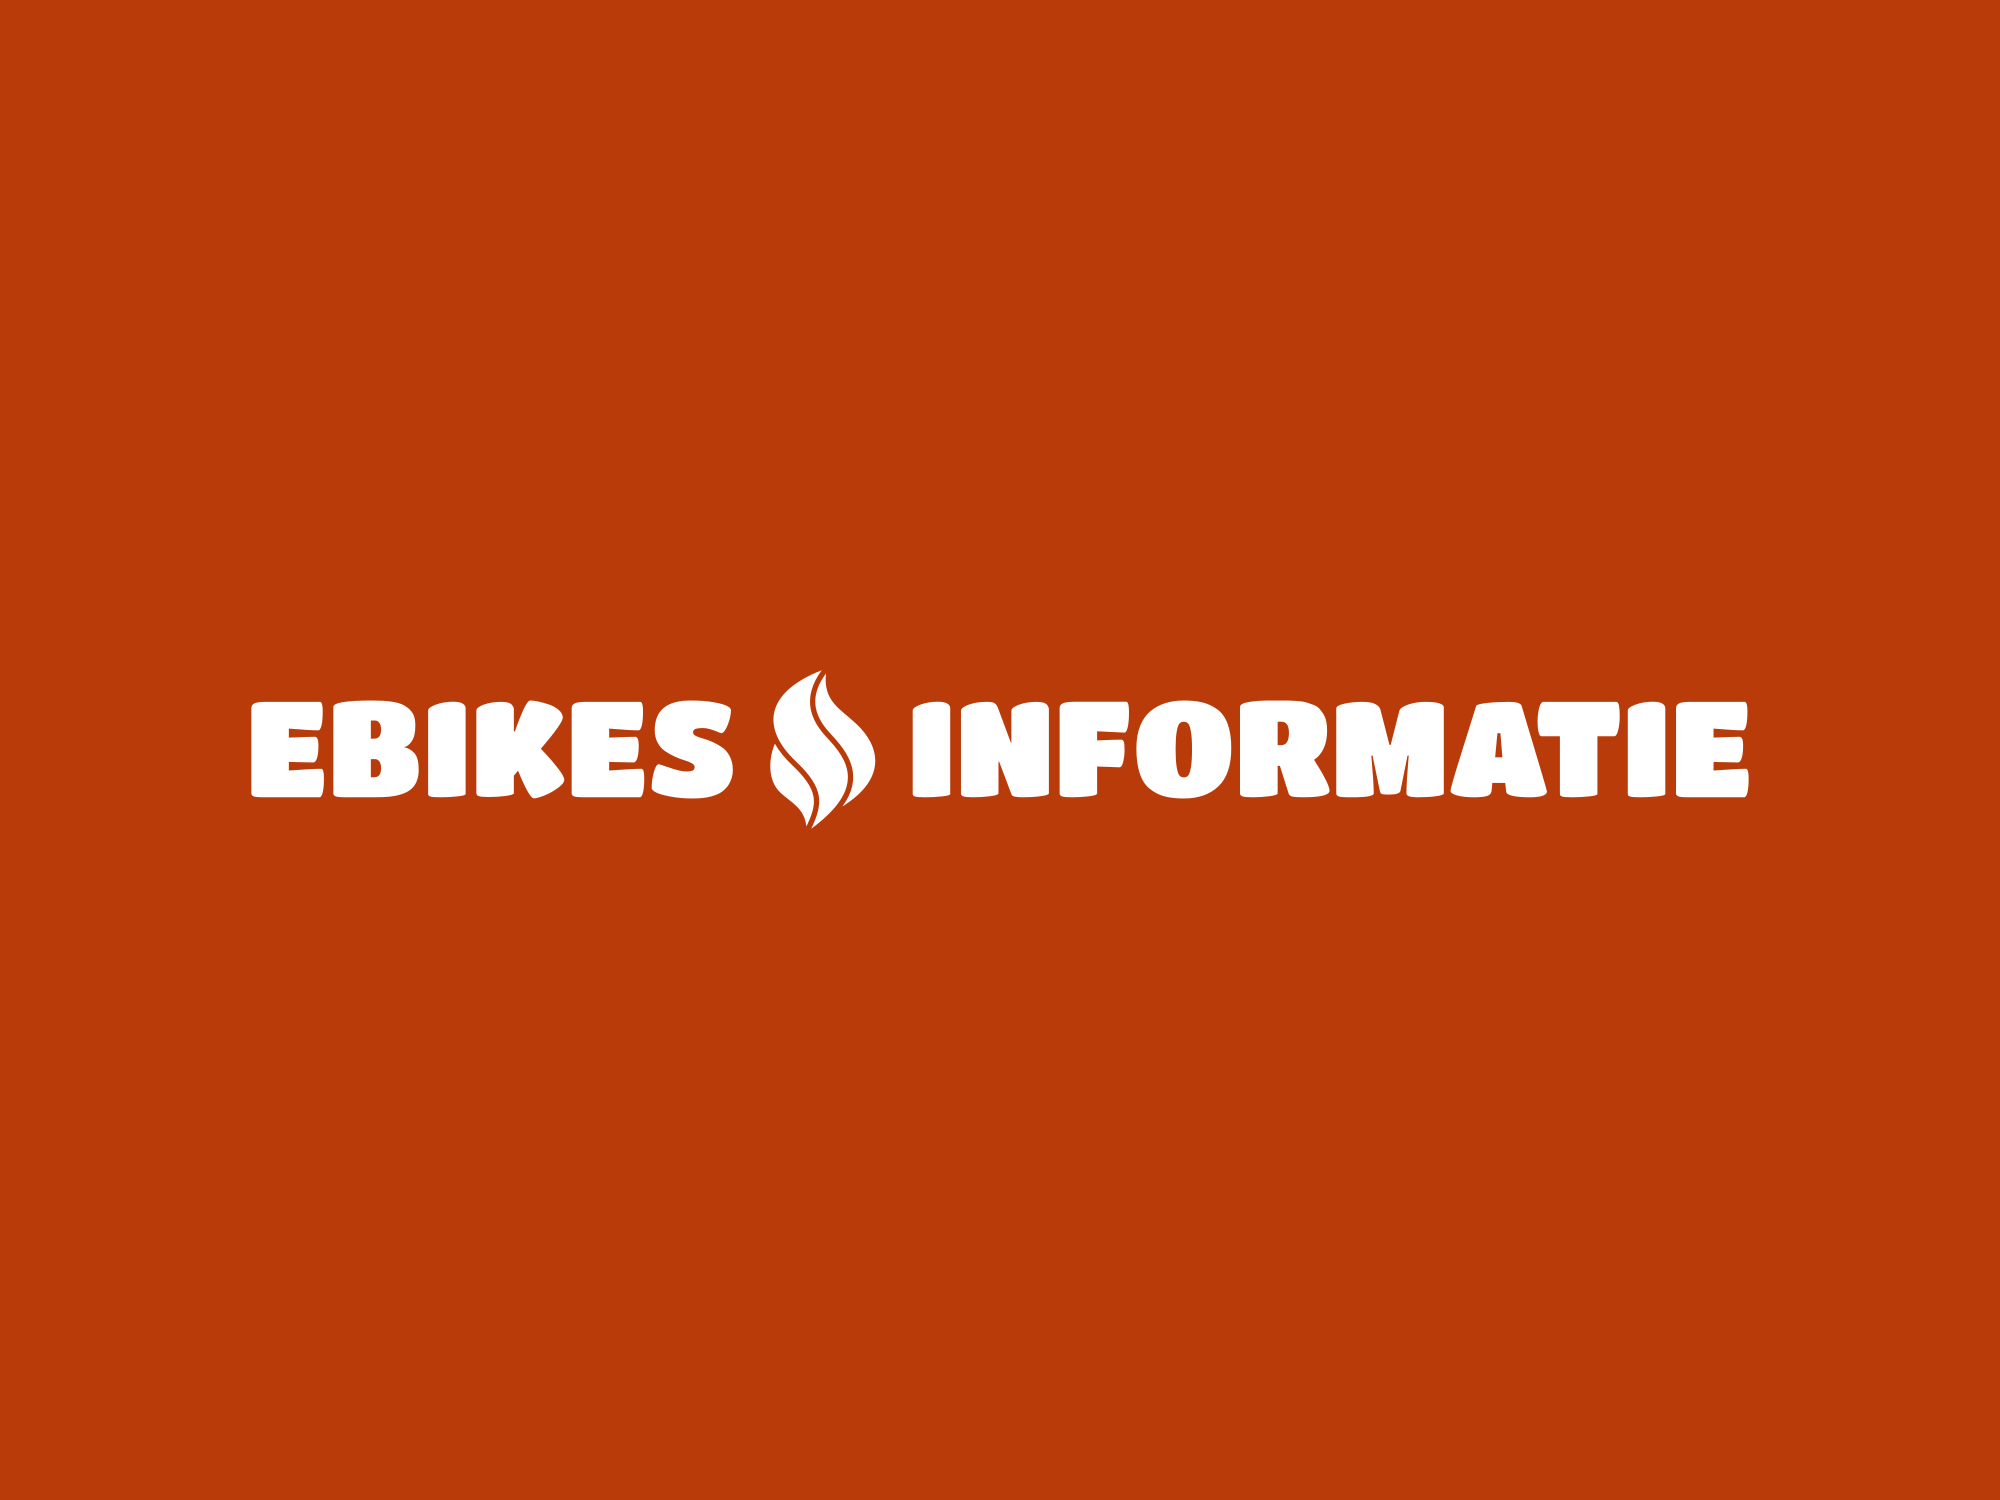 Ebikes Informatie: Hier lees je alles over fietsen - Blogs